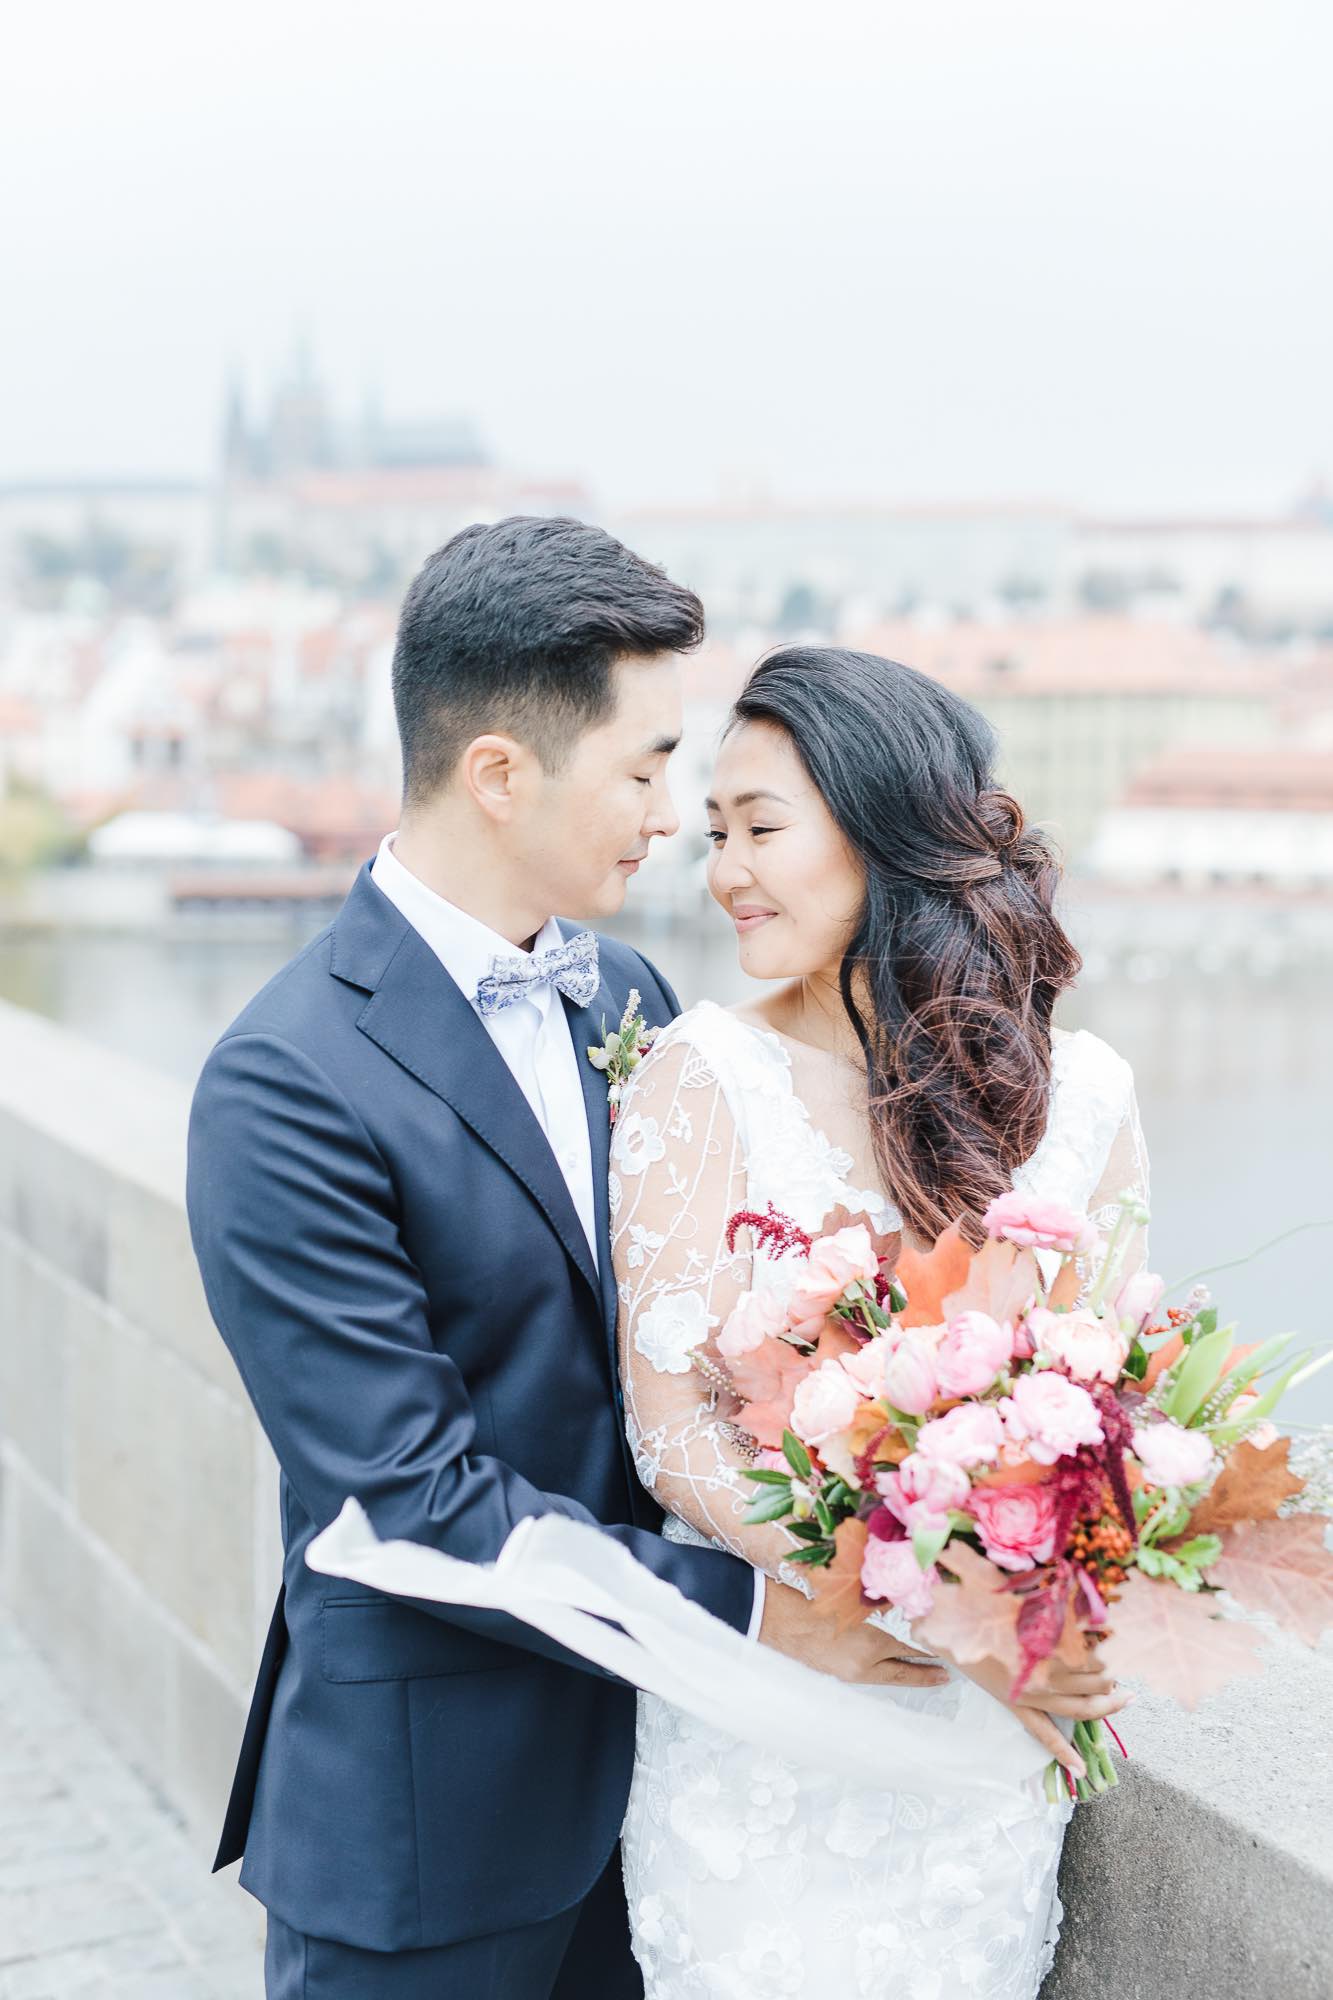 Old Town Hall - Weddings in Prague - Julie May